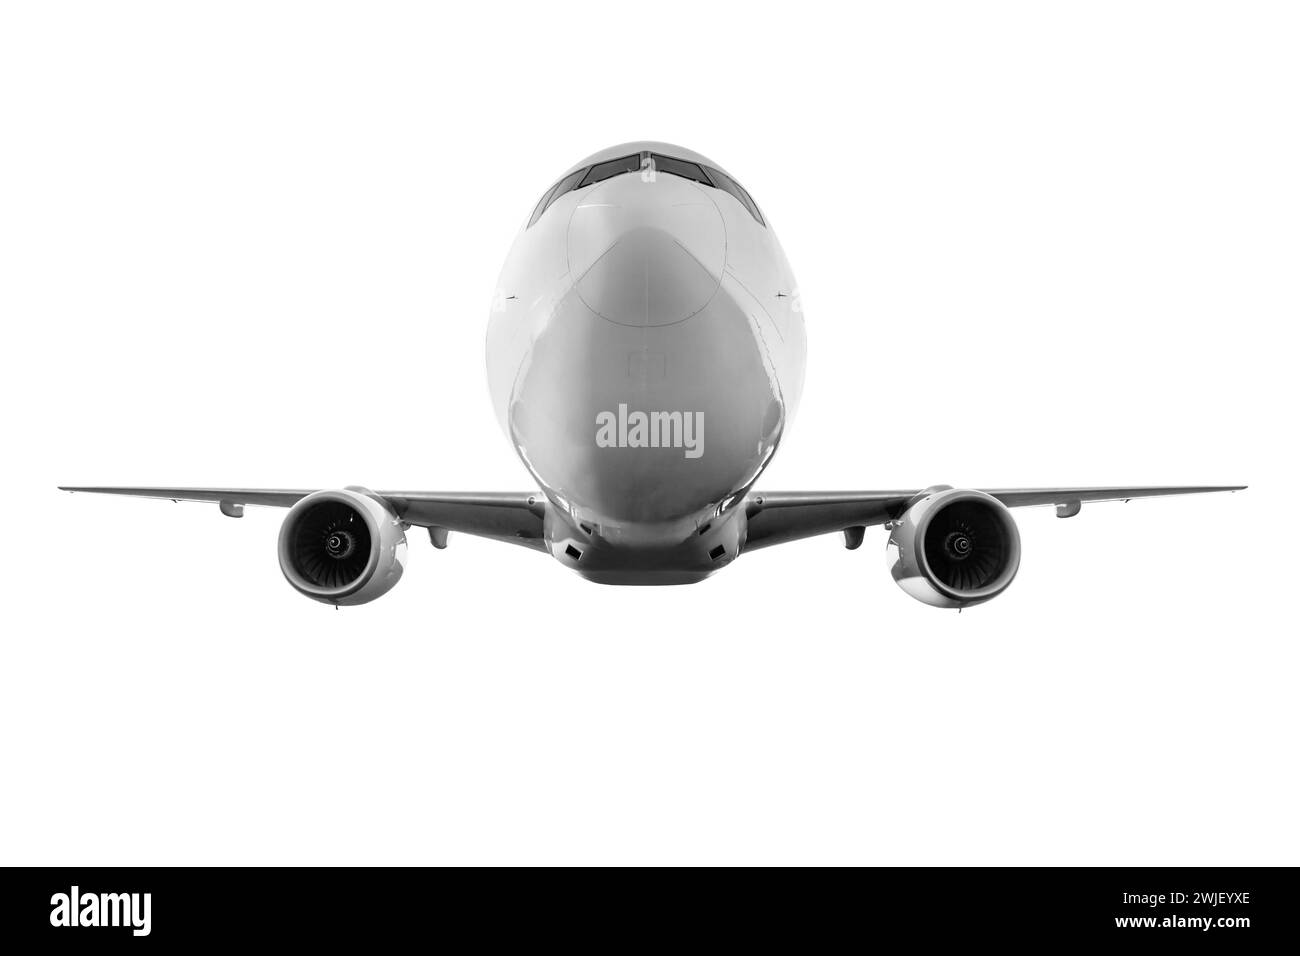 Vorderansicht des breiten Passagierflugzeugs, isoliert auf weißem Hintergrund Stockfoto